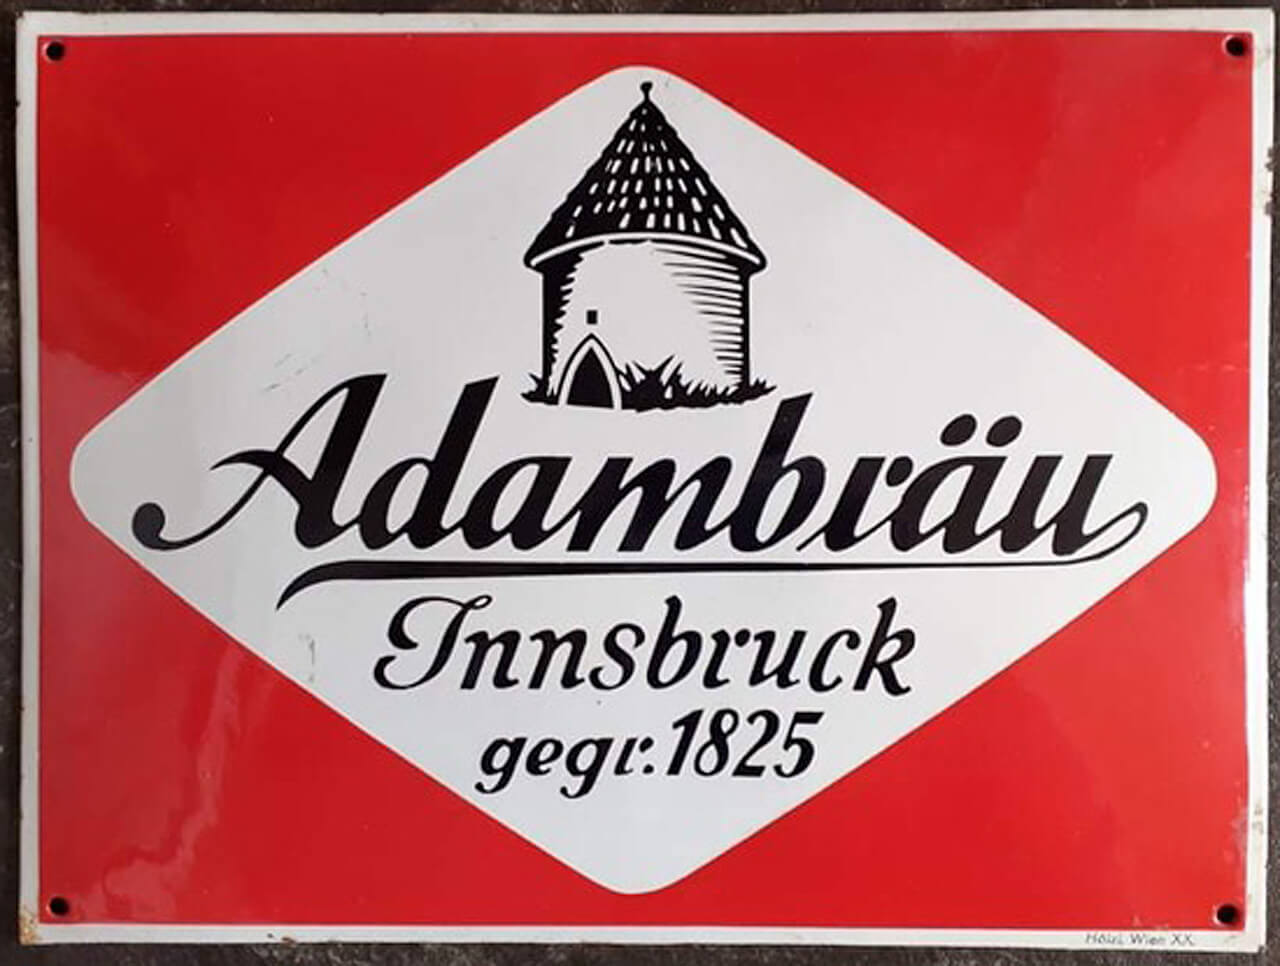 Adambräu